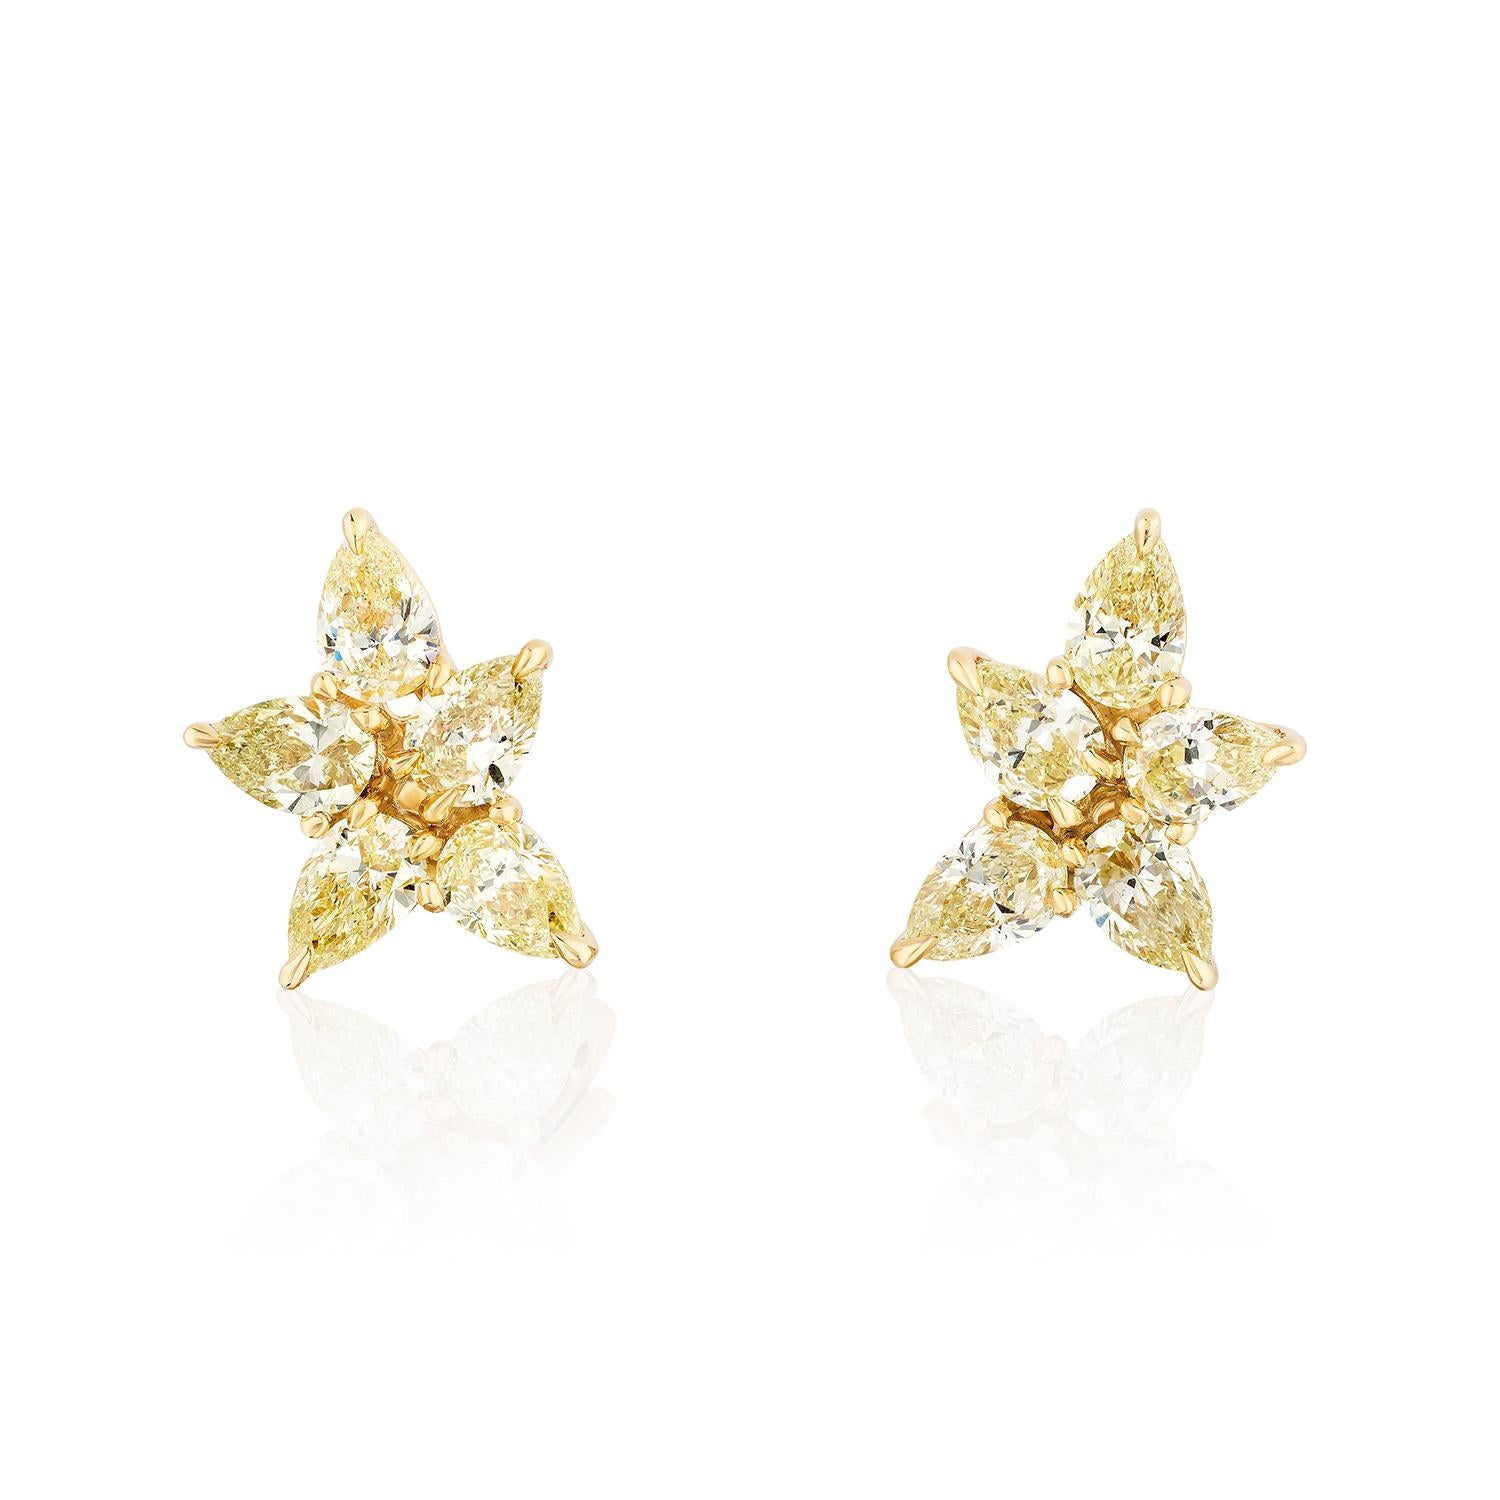 Einzigartige Cluster-Diamant-Ohrringe
10 birnenförmige Diamanten mit einem Gewicht von 5,41 Karat bilden diese wunderschönen Cluster-Ohrringe.

Fassung aus 18 Karat Gelbgold. Clip-Rückseiten.